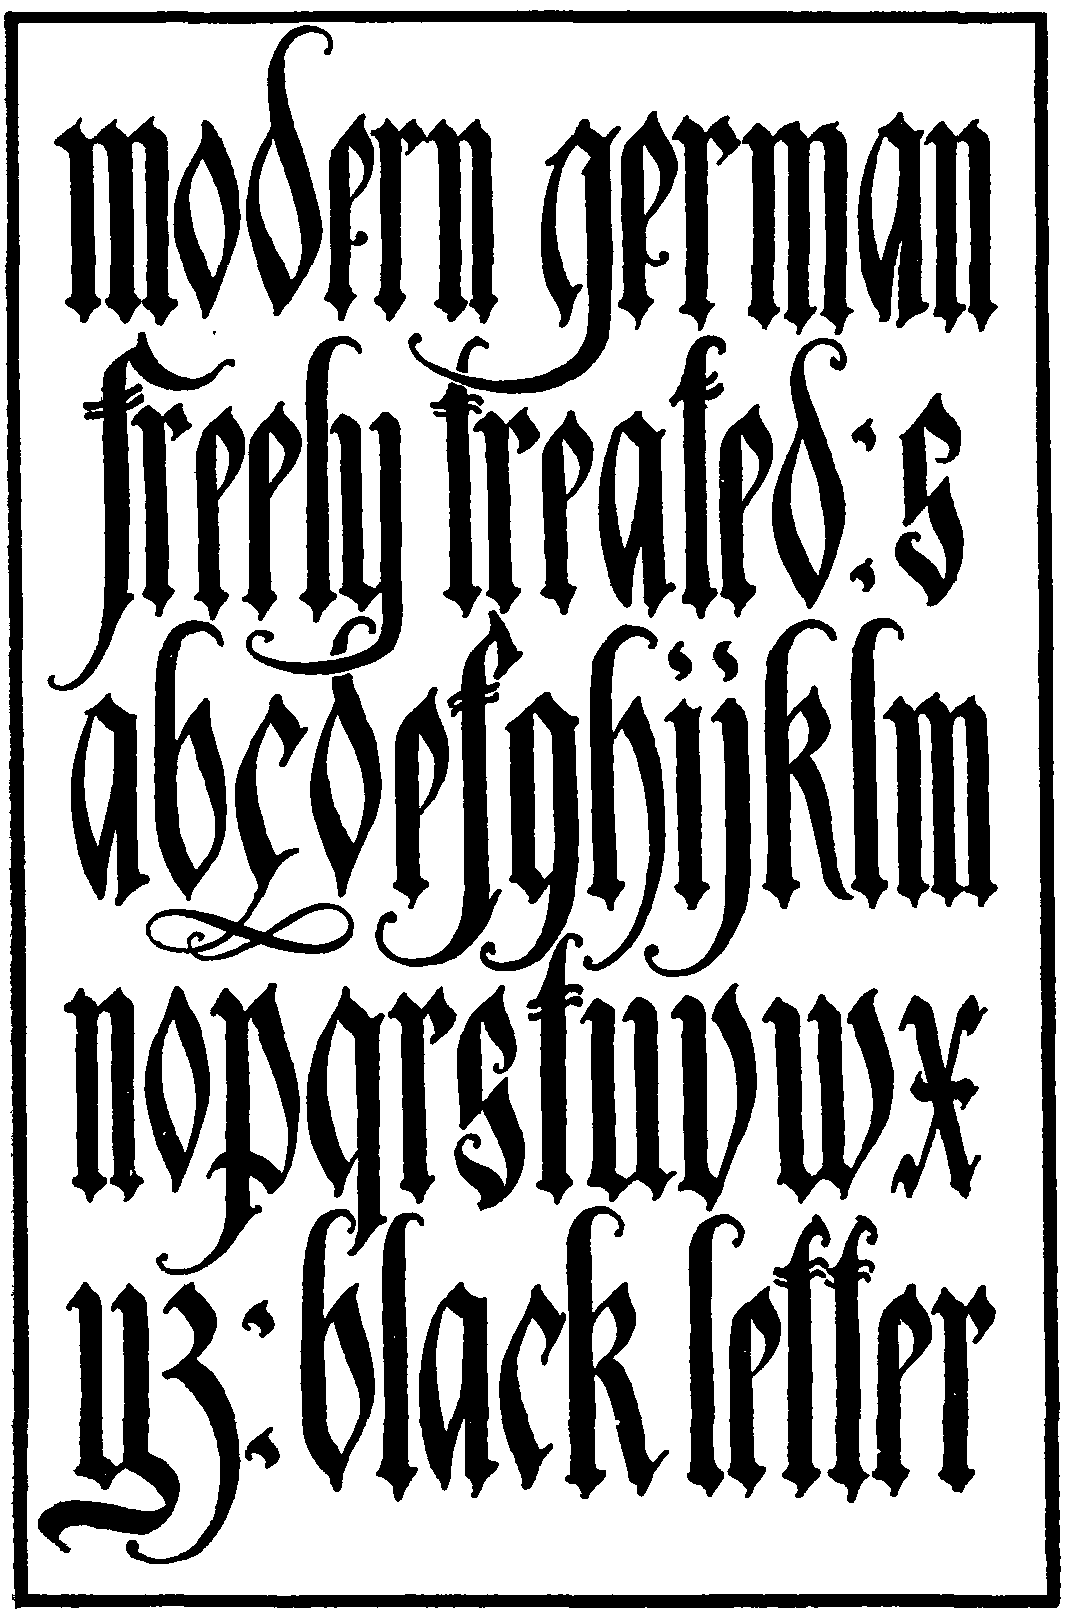 medieval blackletter text